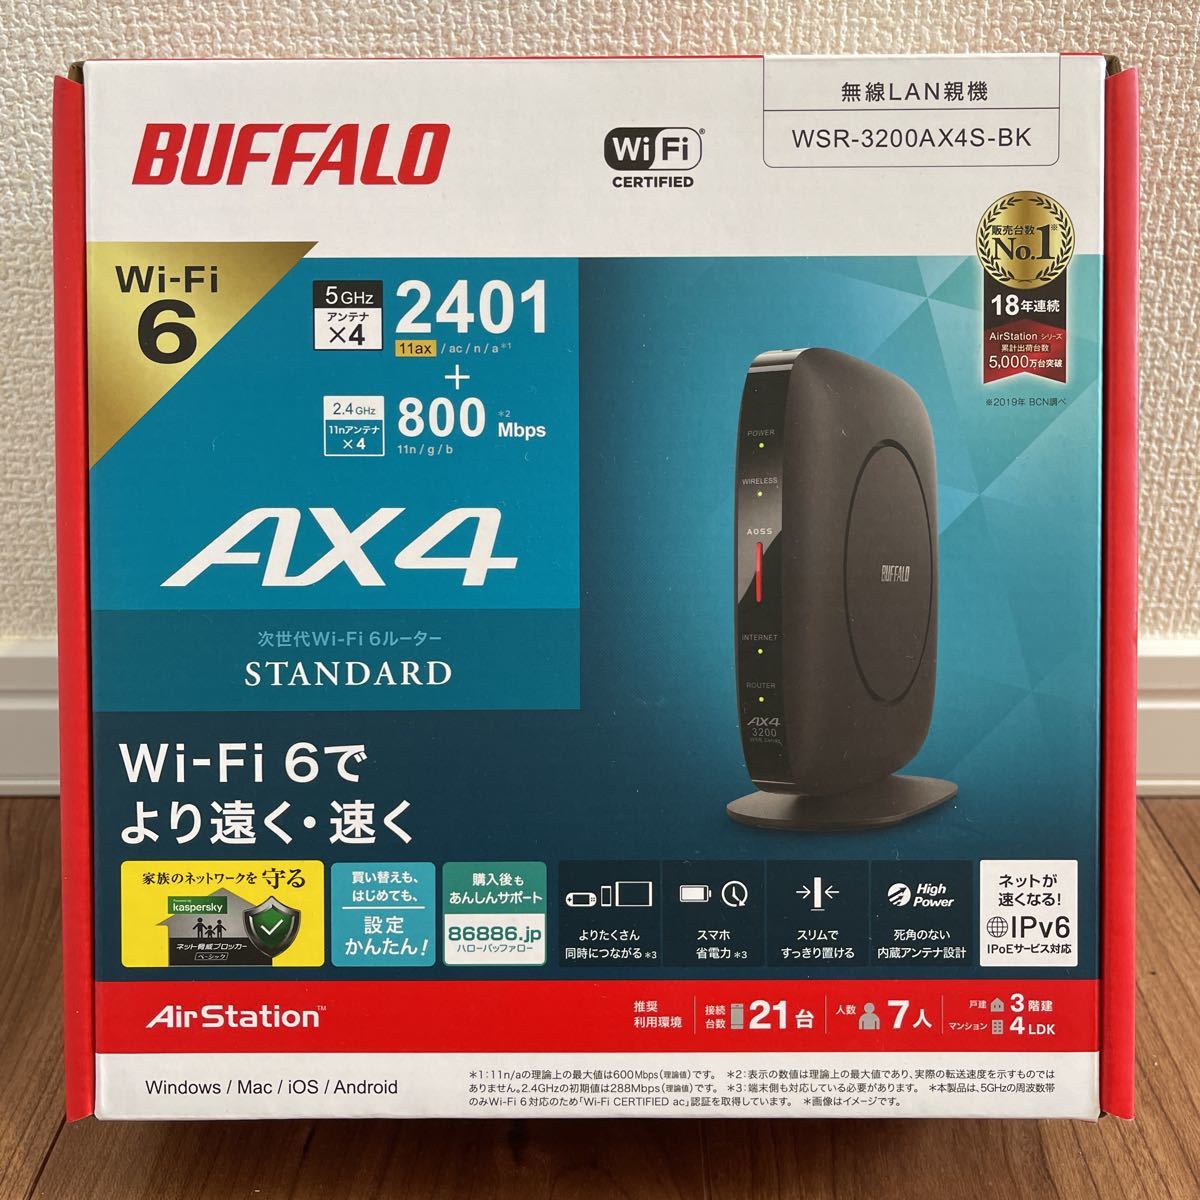 バッファロー BUFFALO WSR-3200AX4S-BK 無線LANルーター 無線LAN親機 11ax（Wi-Fi 6）対応 (2401+800mbps)